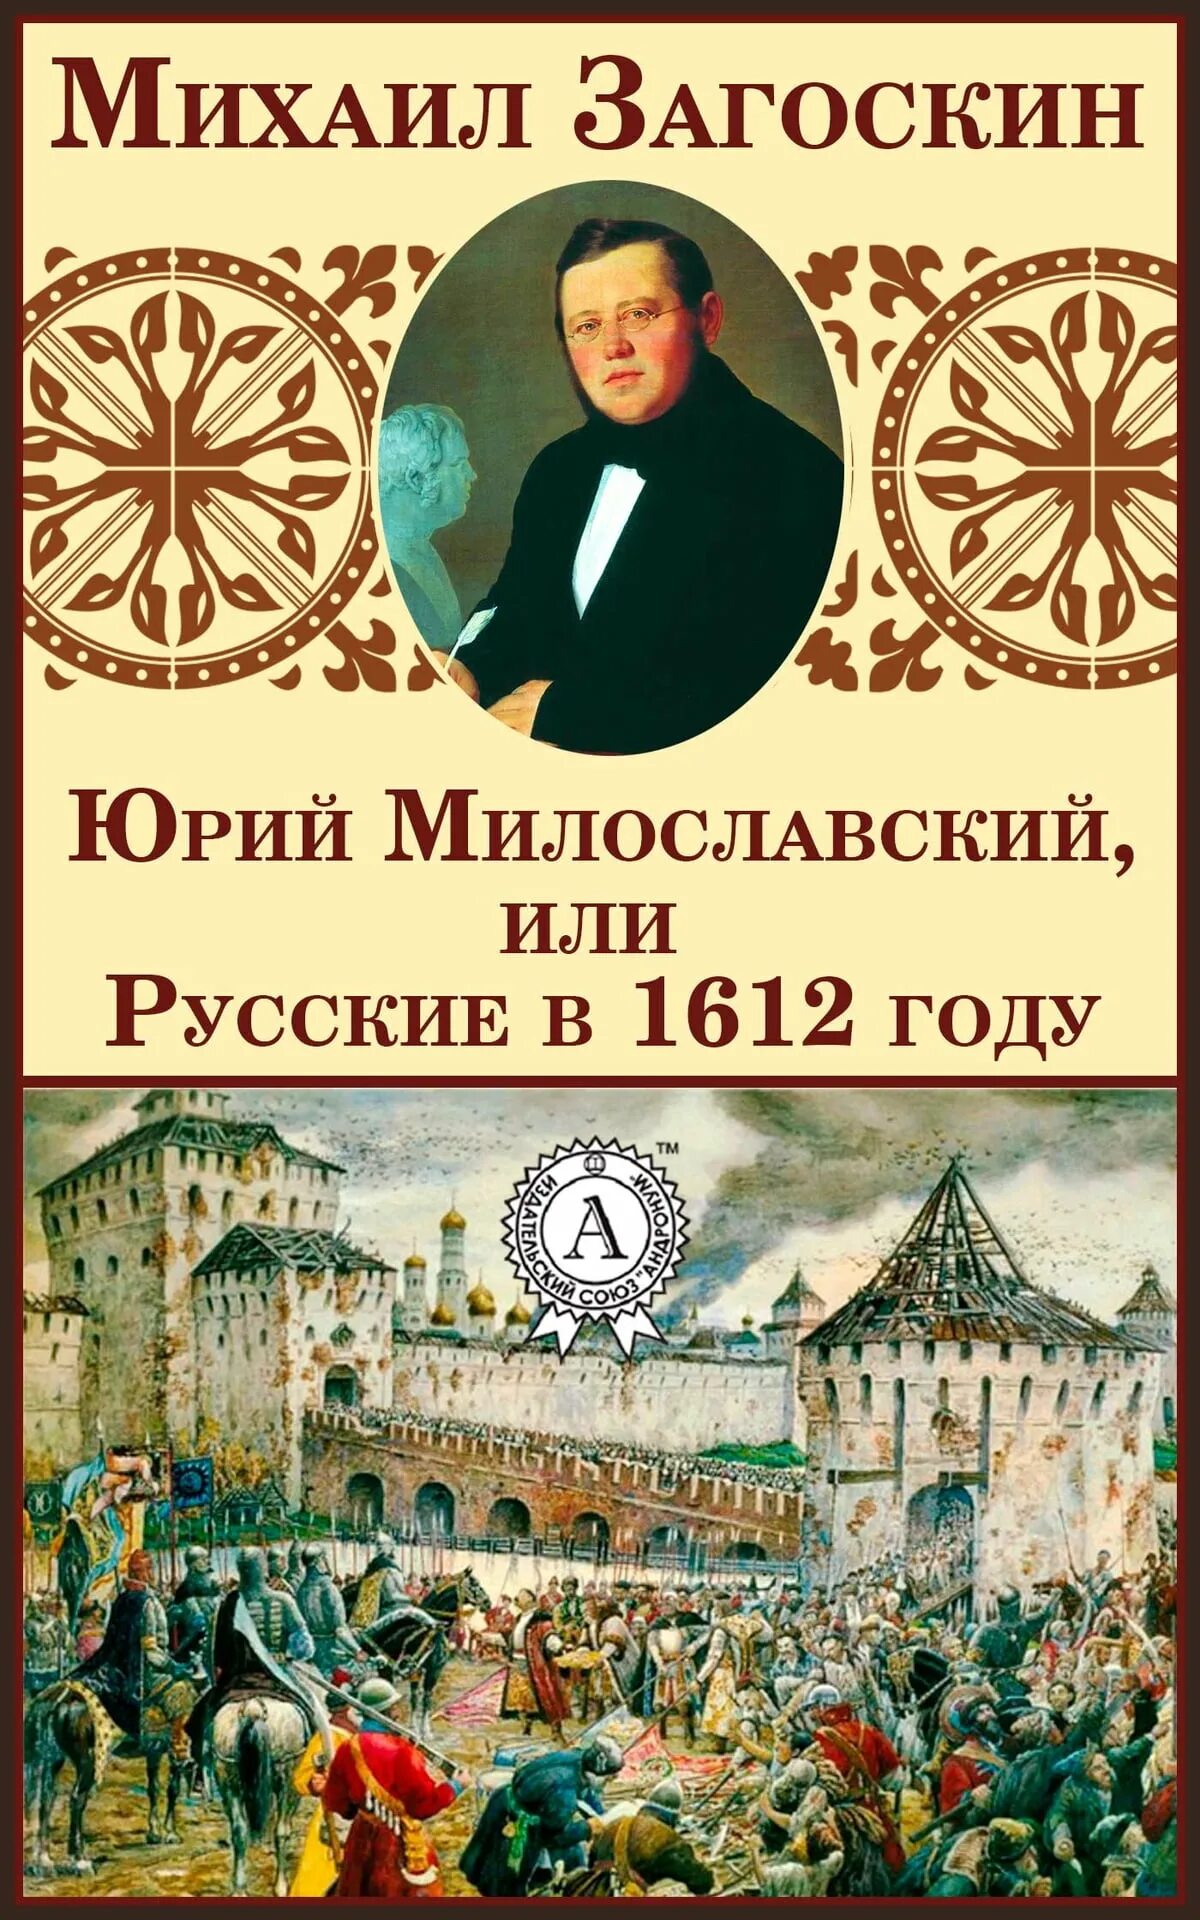 Милославский или русские в 1612 году. Загоскин 1612.